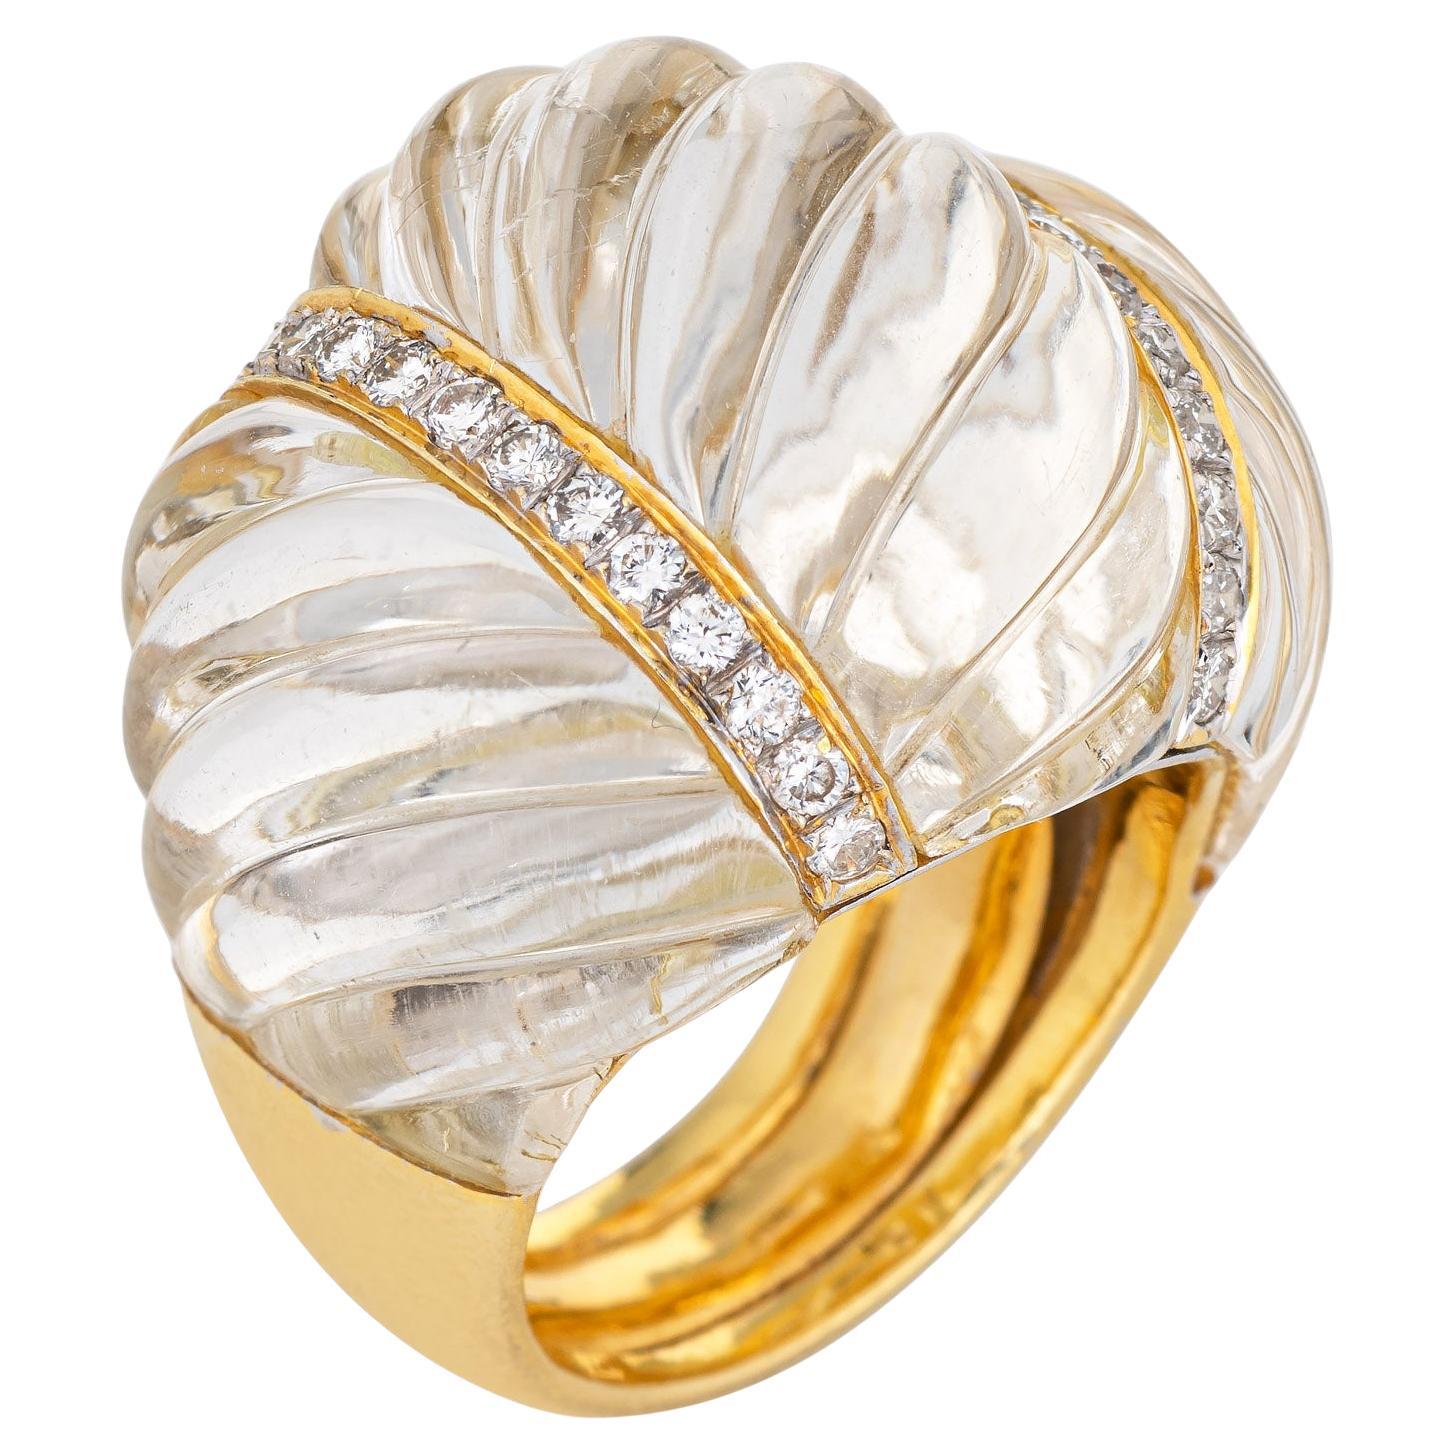 Fluted Bergkristall Diamant Ring Dome Cocktail Vintage 18k Gold Schmuck Sz 7